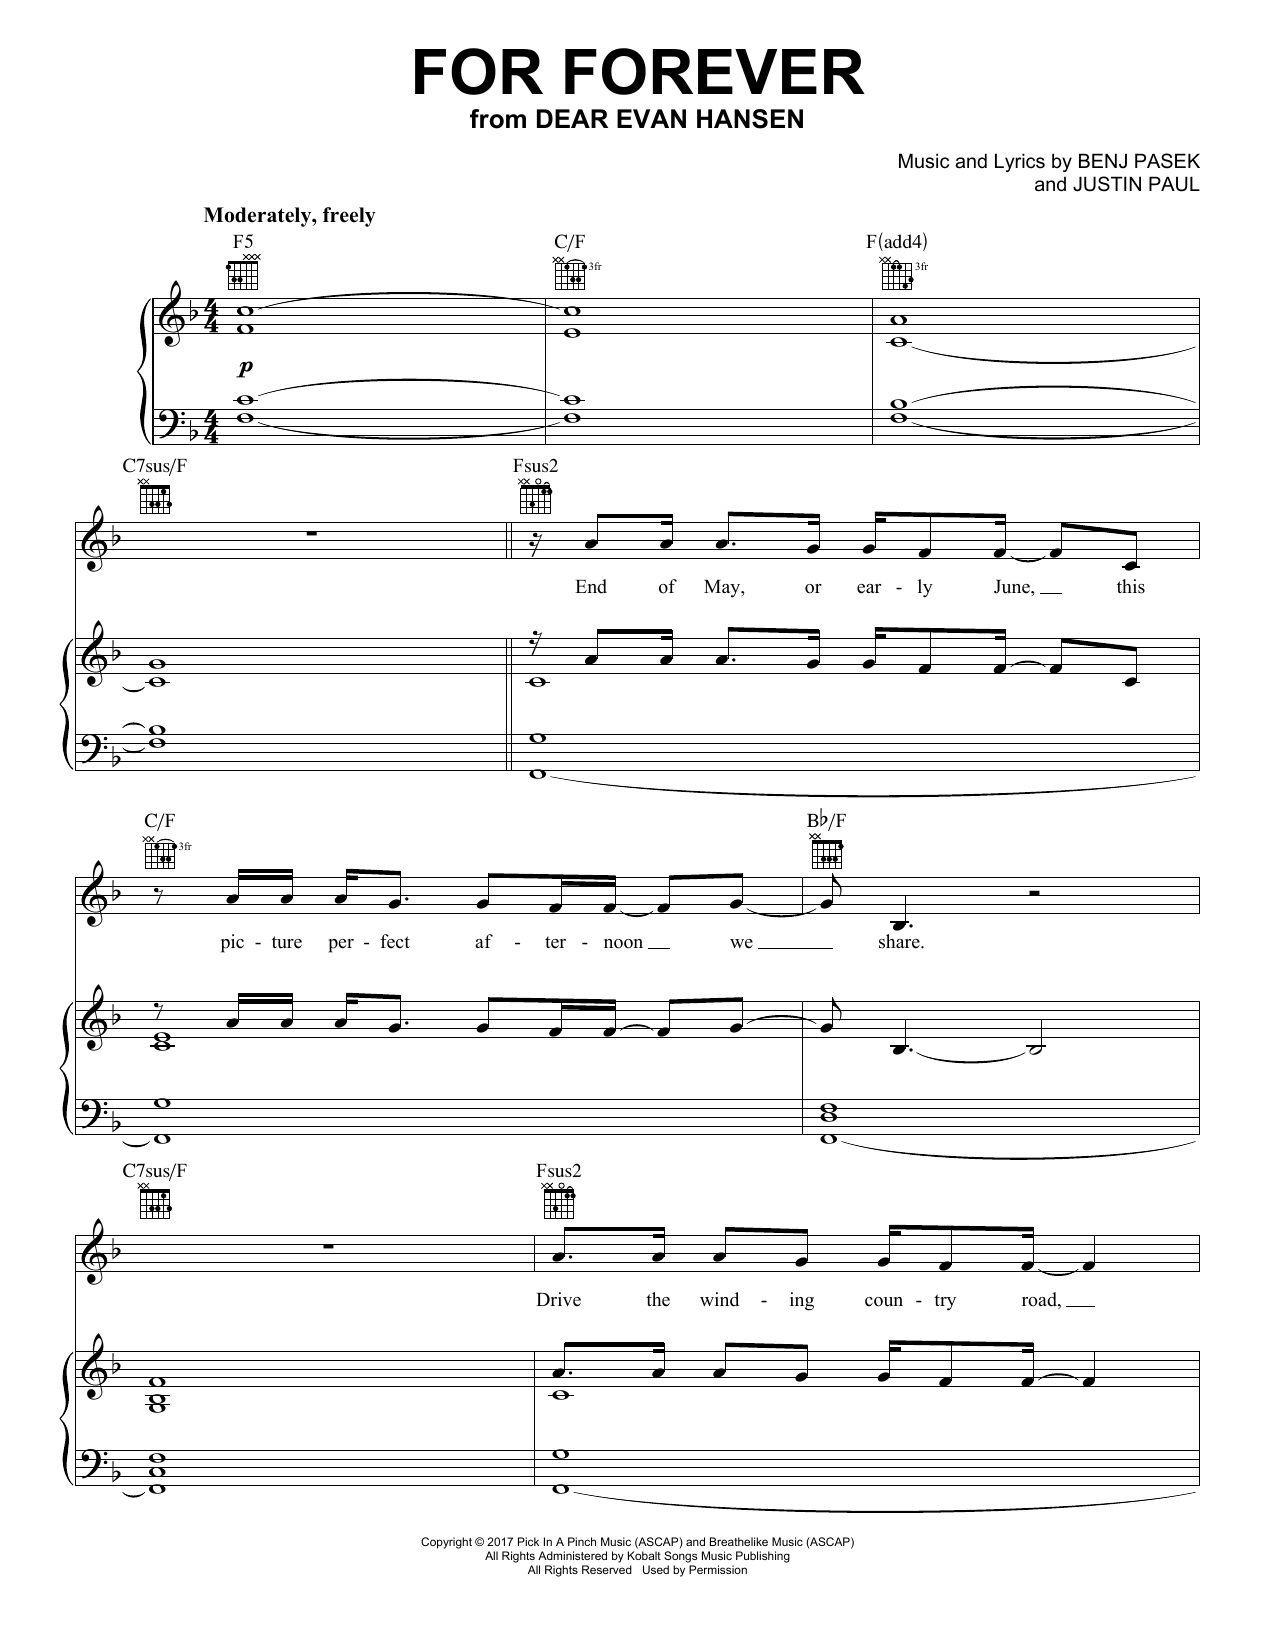 Download Pasek & Paul For Forever (from Dear Evan Hansen) Sheet Music